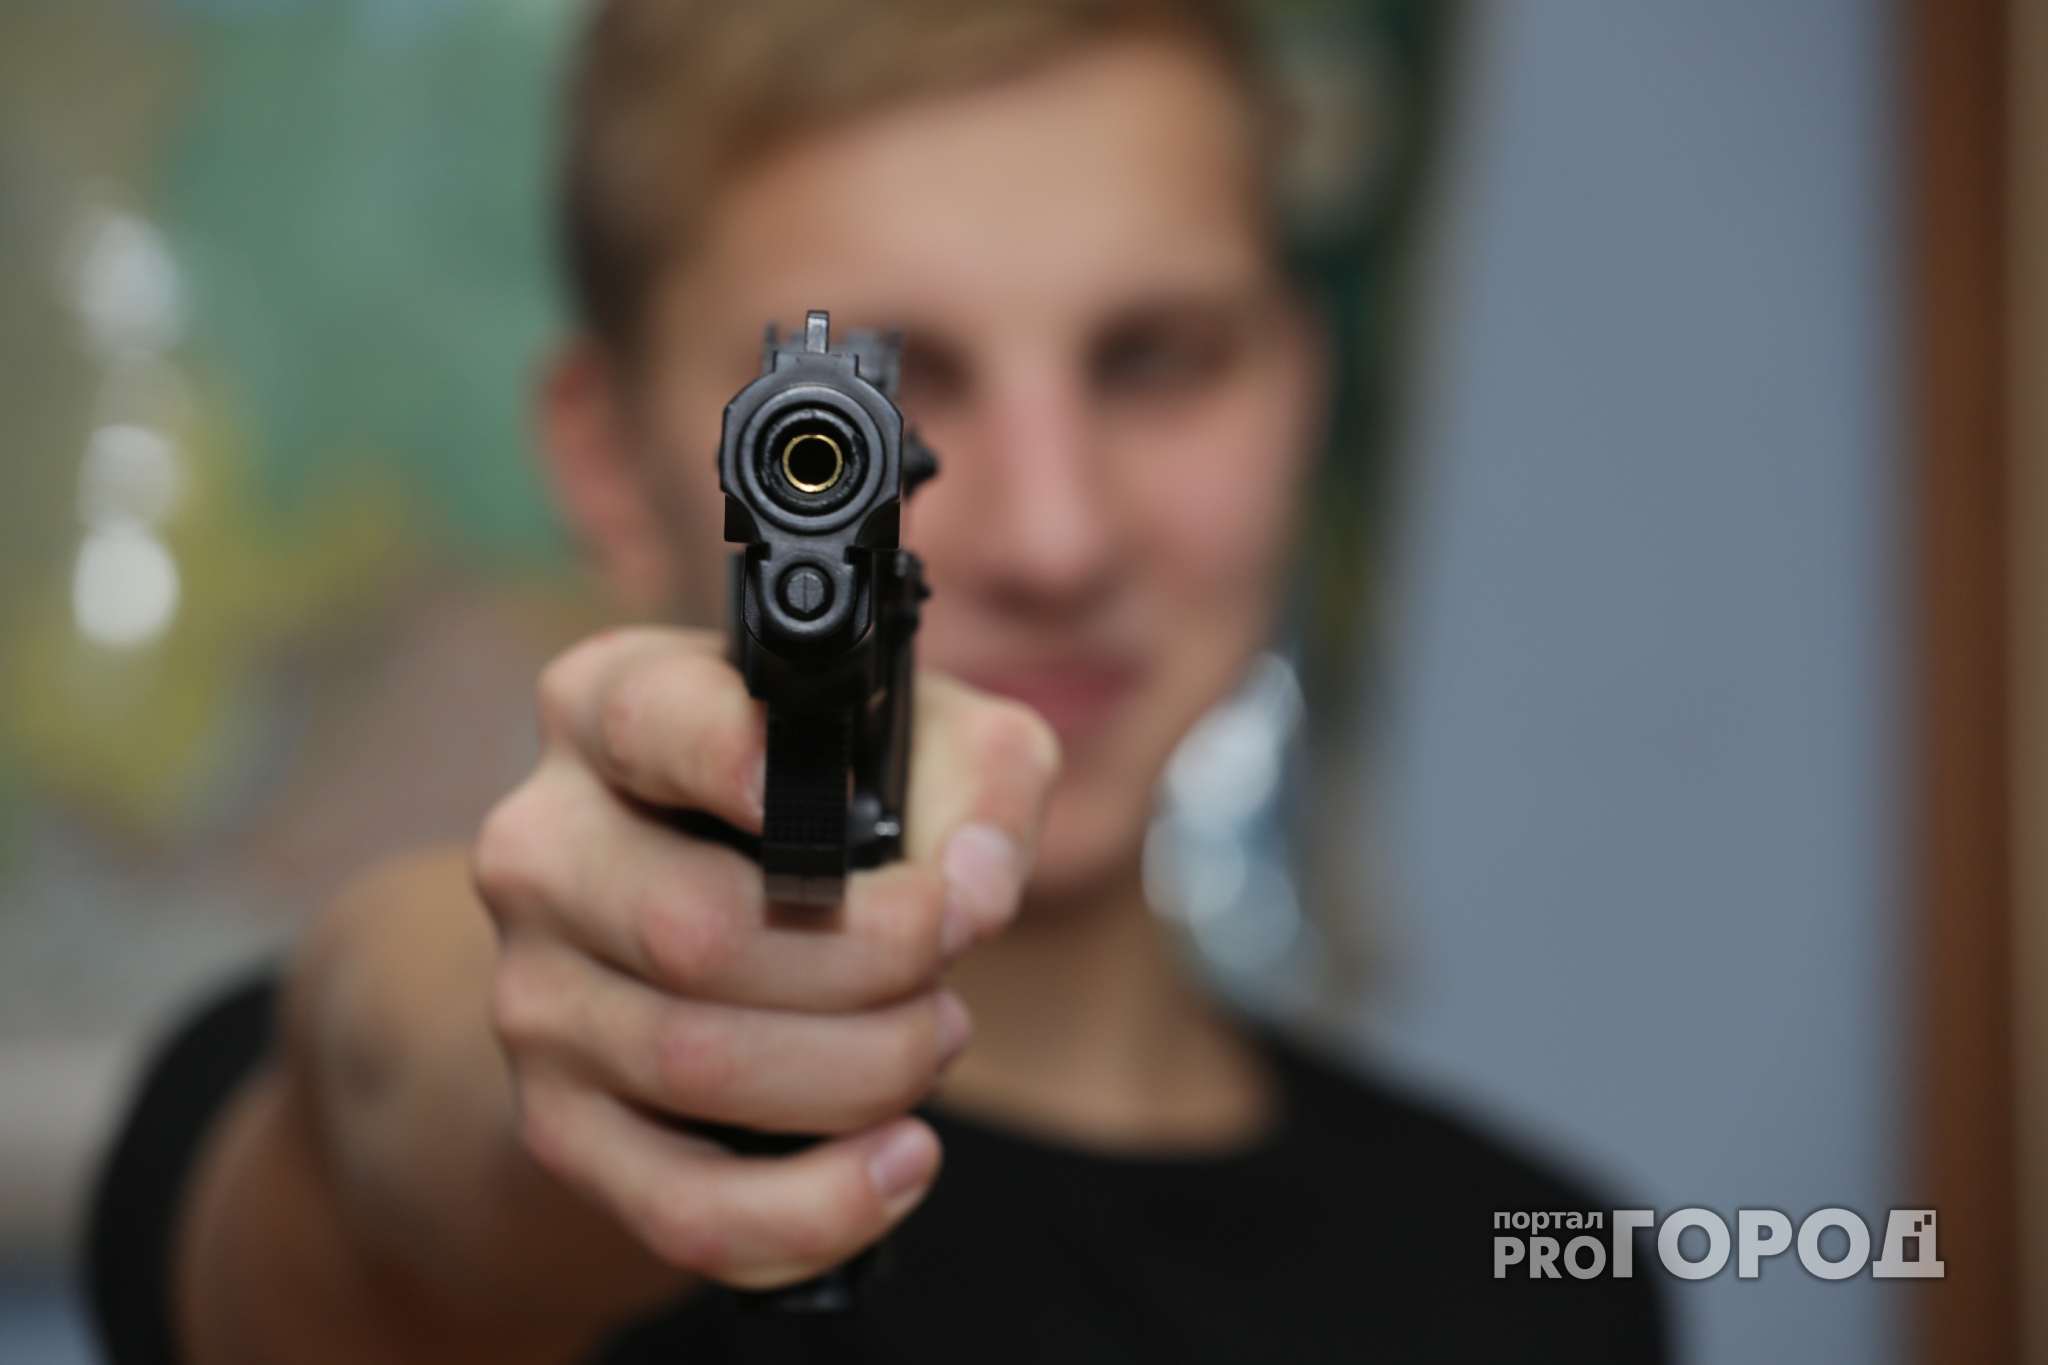 Гусевчанин ограбил офис с помощью игрушечного пистолета